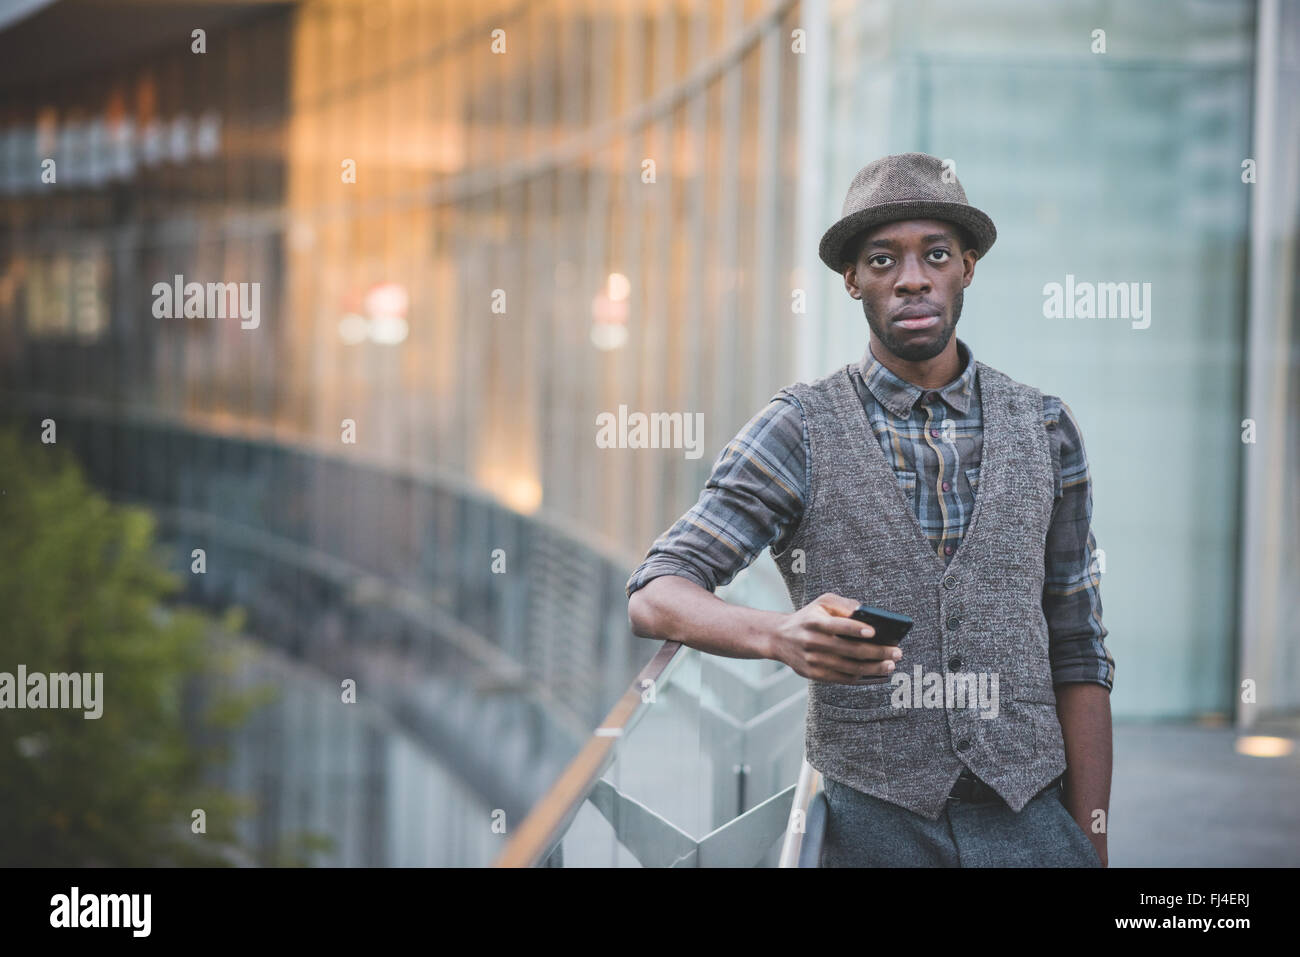 Knie-Figur des schönen jungen Afro Mann hält eine Smartphone stützte sich auf einen Handlauf auf der Suche in der Kamera Exemplar auf linken Seite - soziales Netzwerk, Kommunikation, Technologie-Konzept Stockfoto